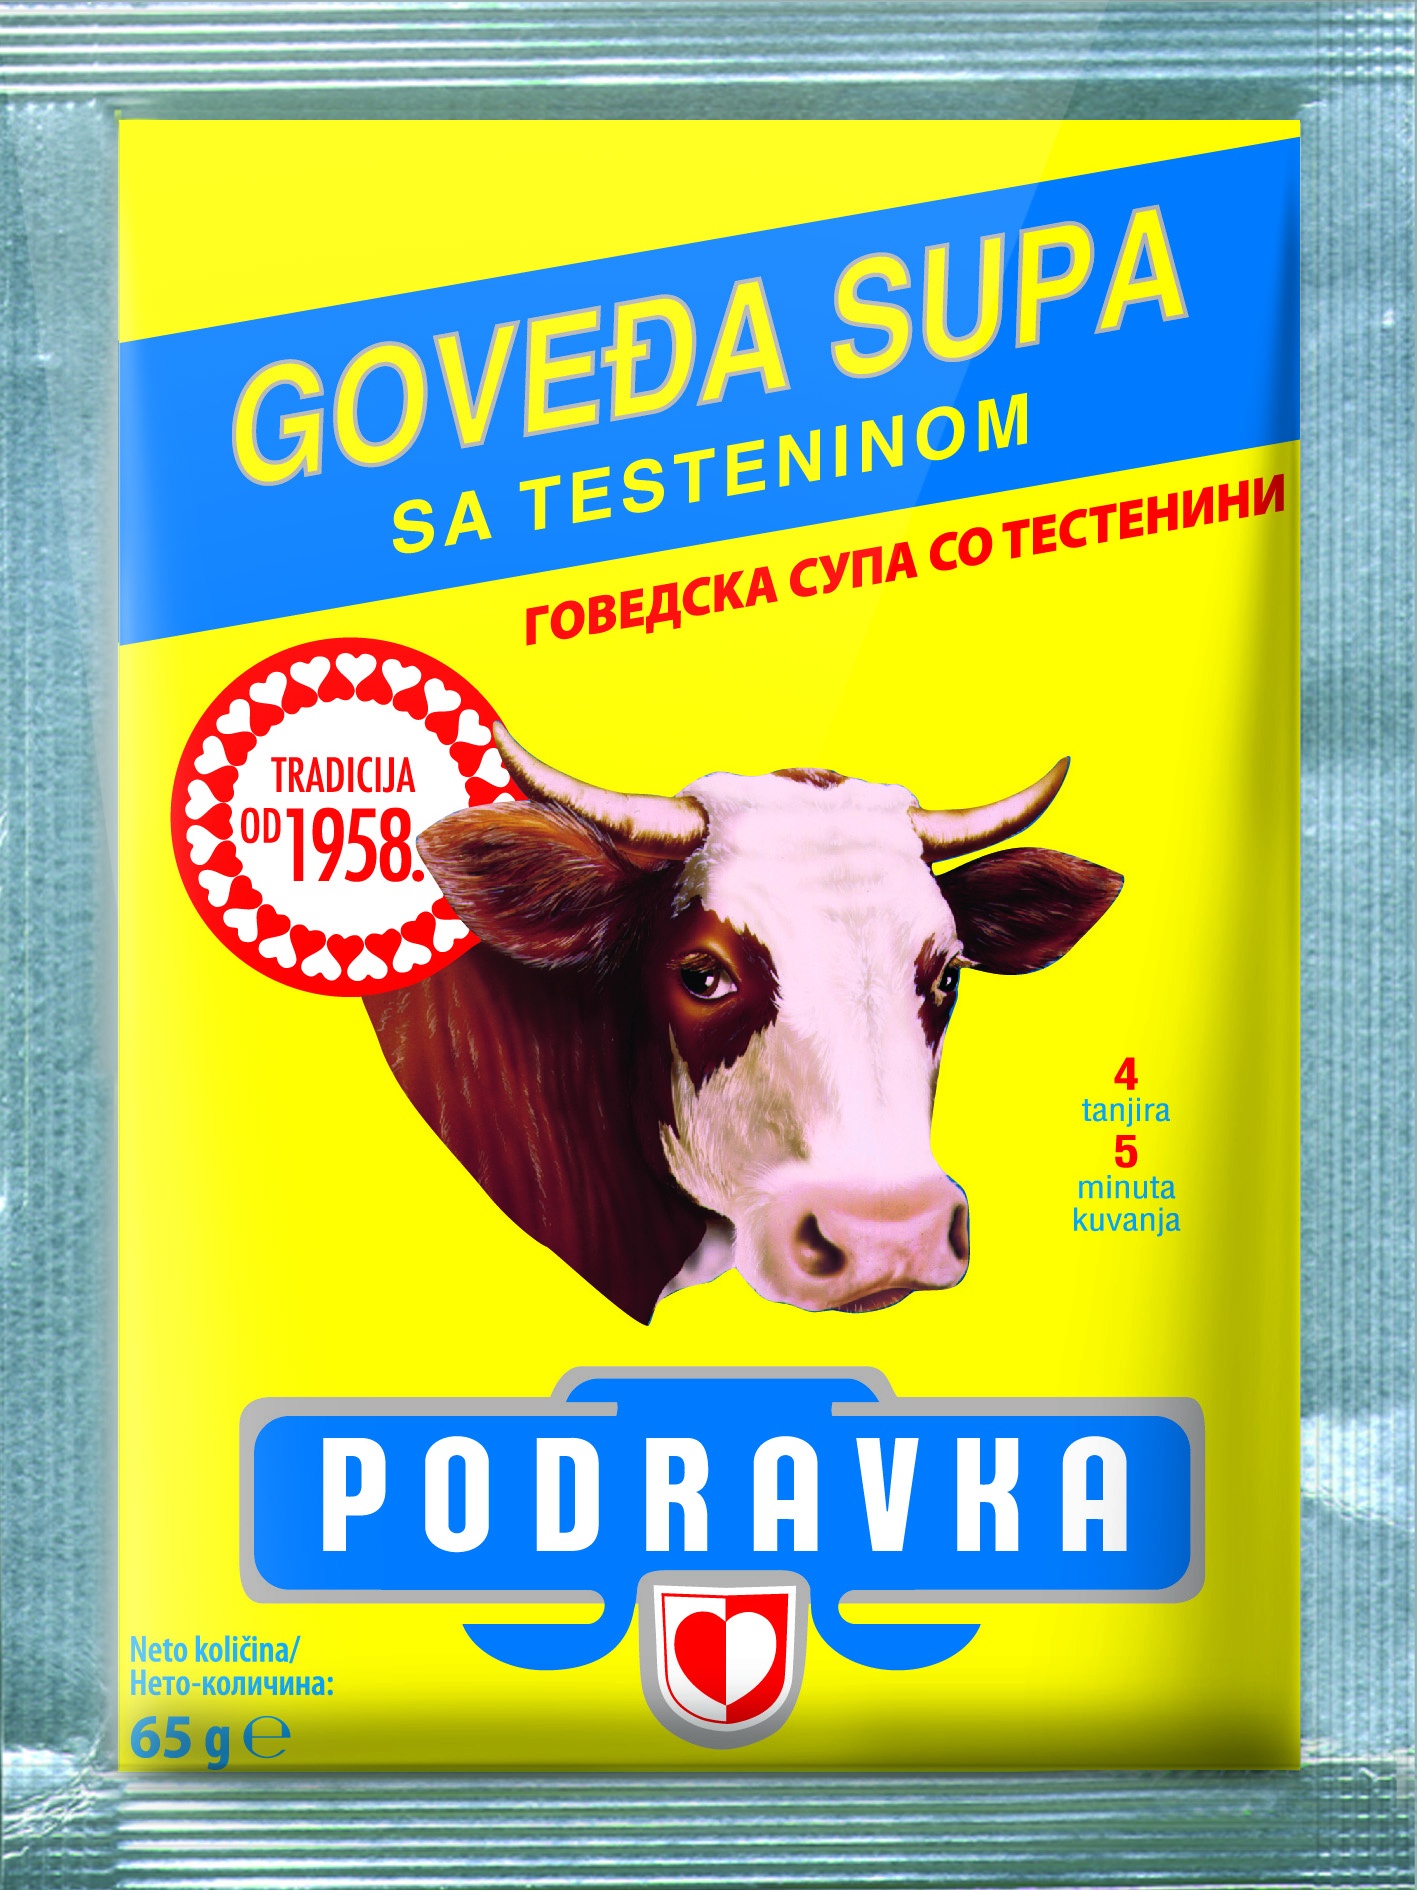 Slika za Supa goveđa sa testeninom Podravka 65g